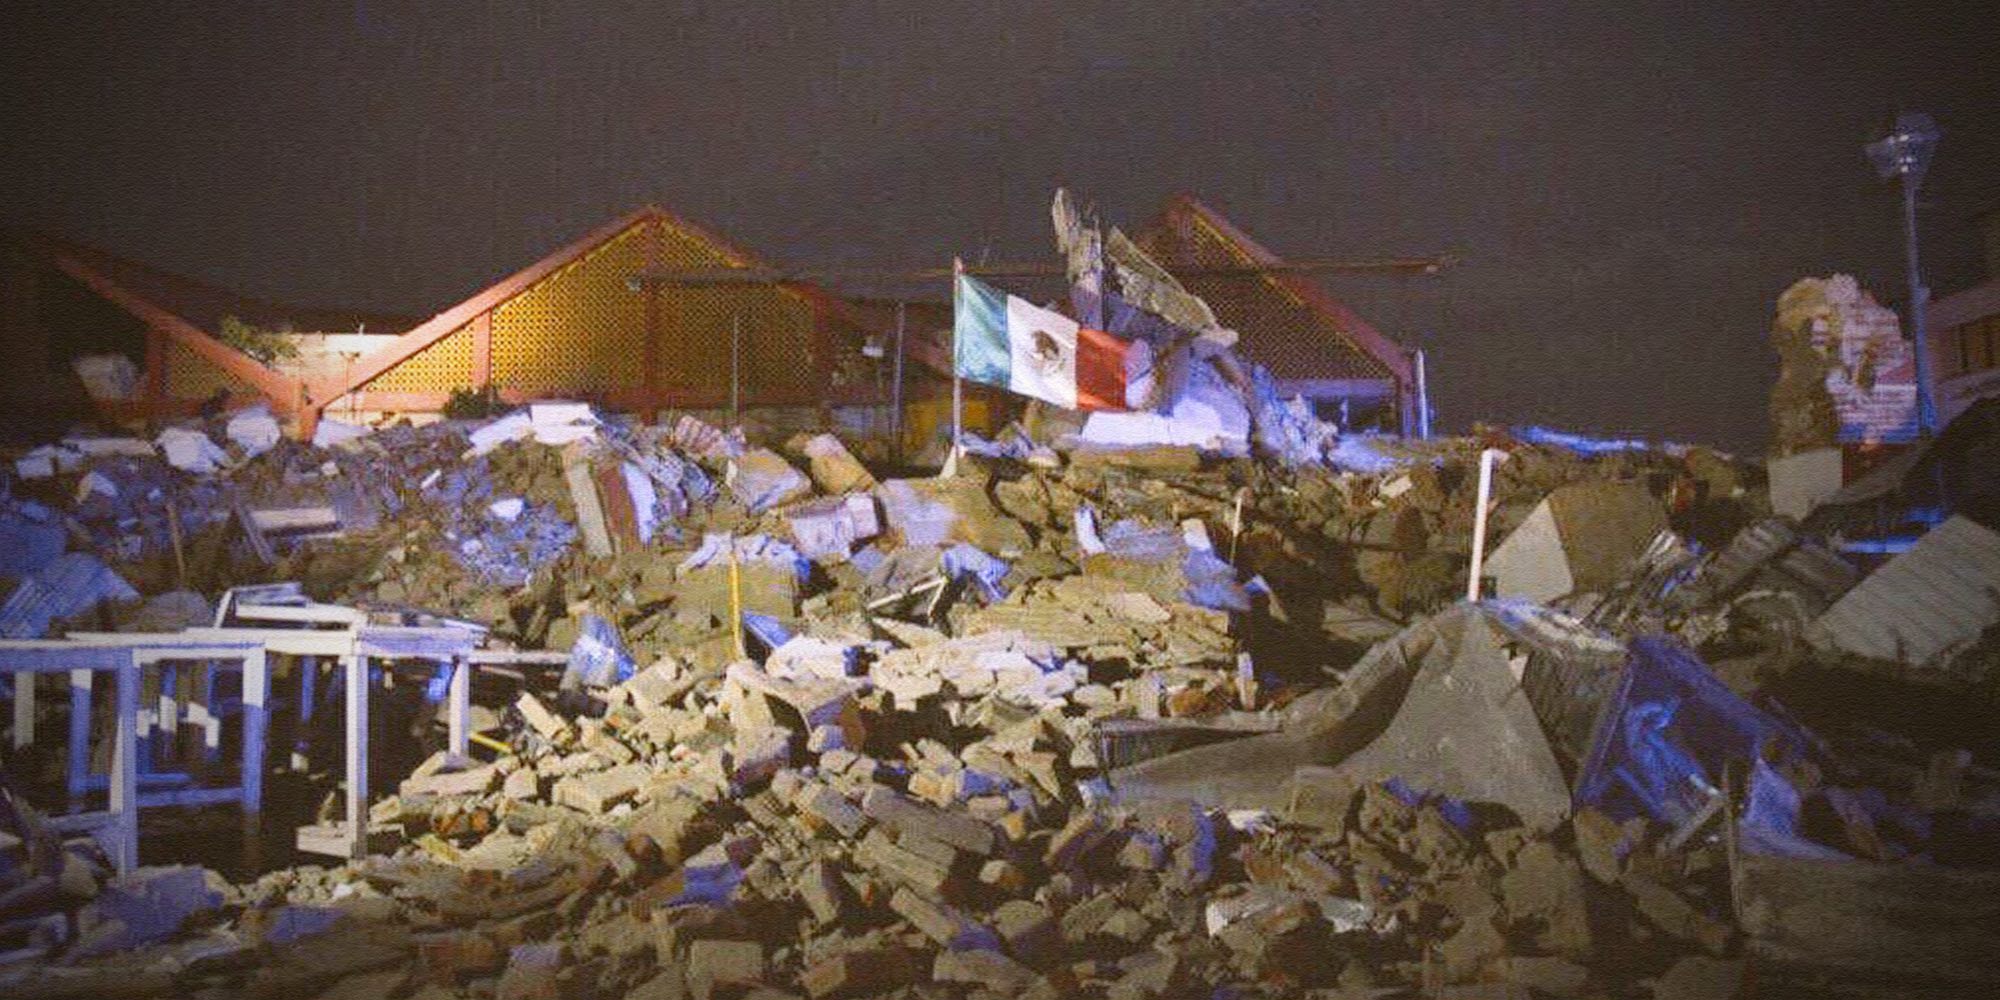 bandera-mexico-escombros-palacio-municipal-oaxaca-7s-sismo-temblor-chiapas